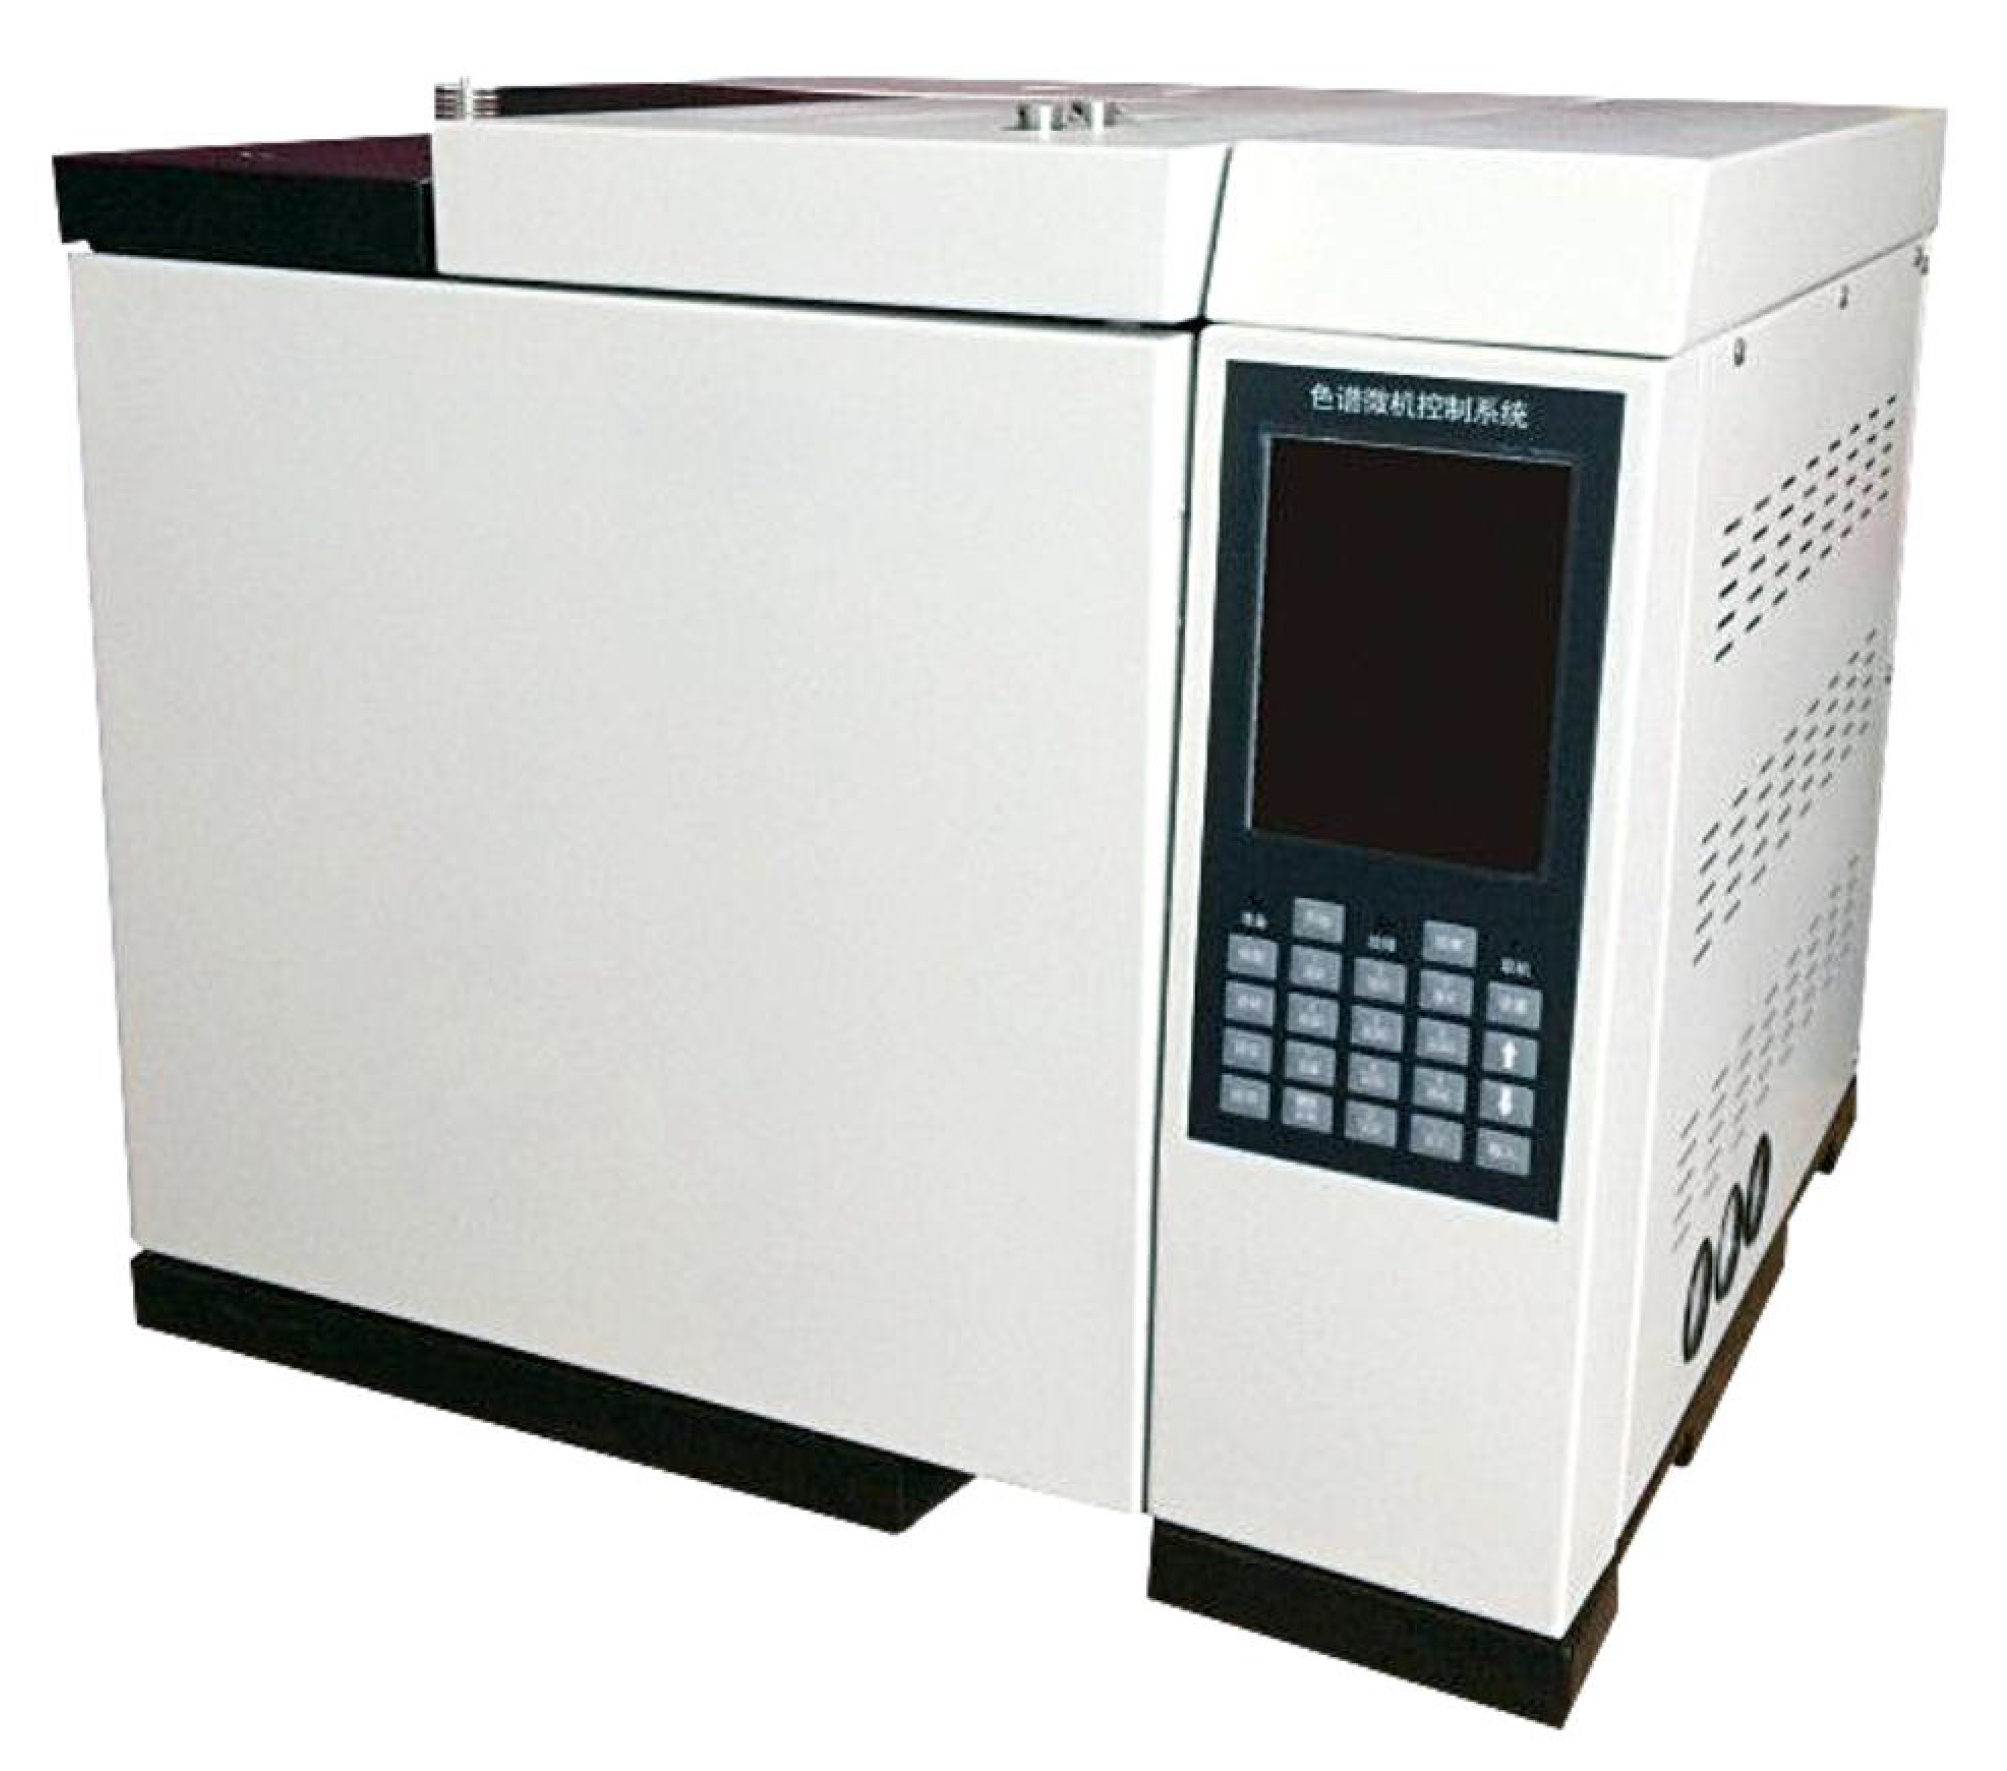 高效液相色谱仪使用中常见故障及解决方法